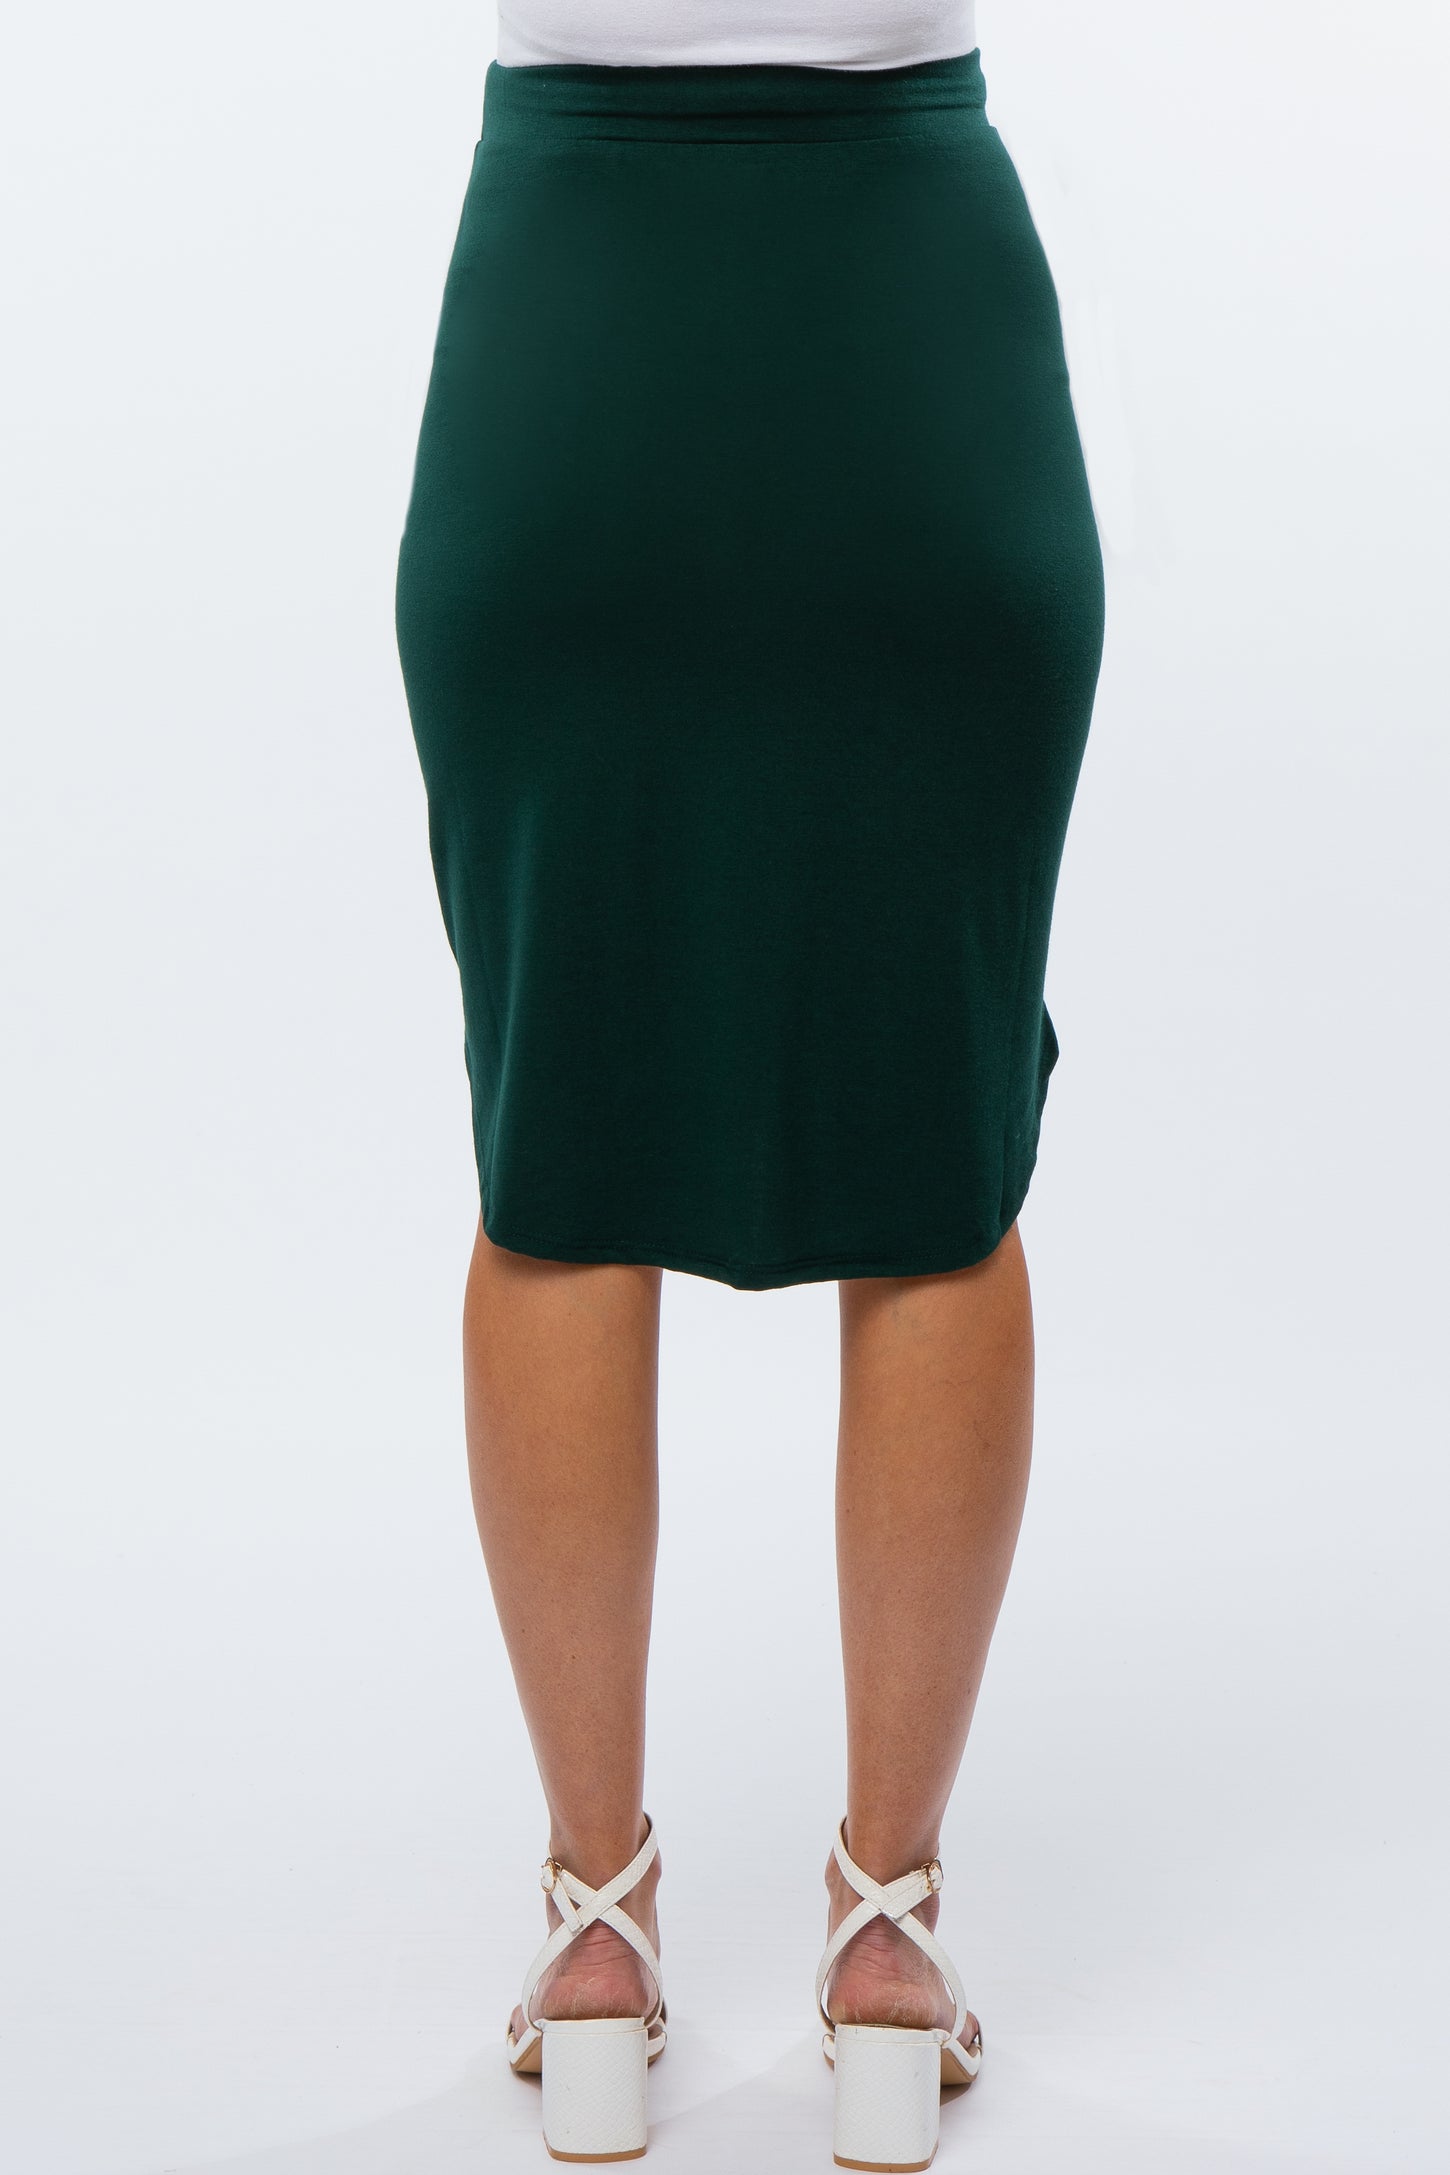 Forest Green Maternity Skirt